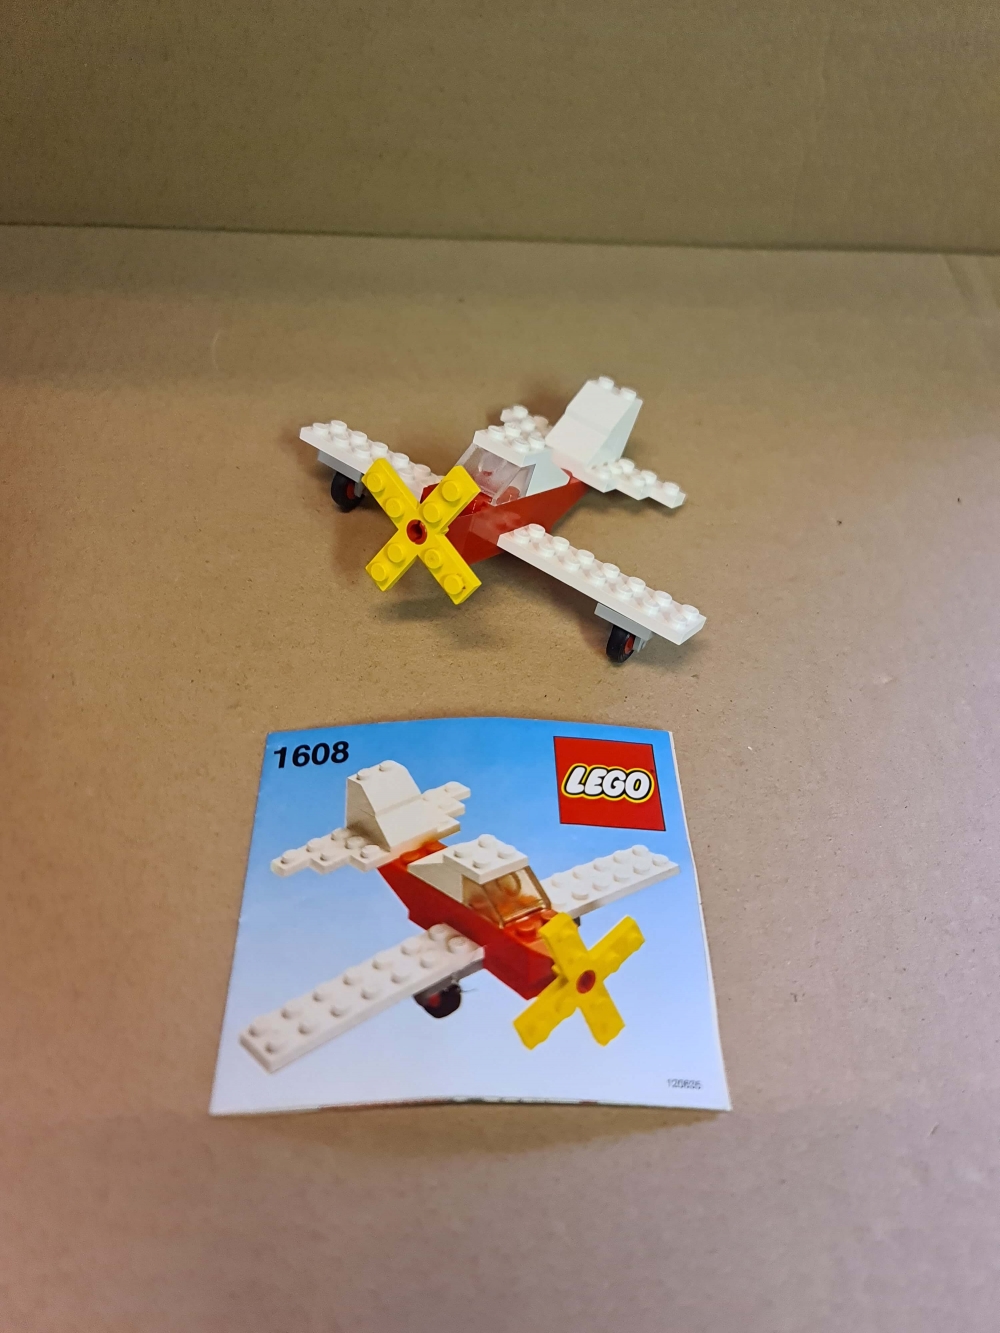 Sett 1608 fra Lego Universal Building Set serien.
Meget pent. Komplett med manual.
Meget sjeldent sett.